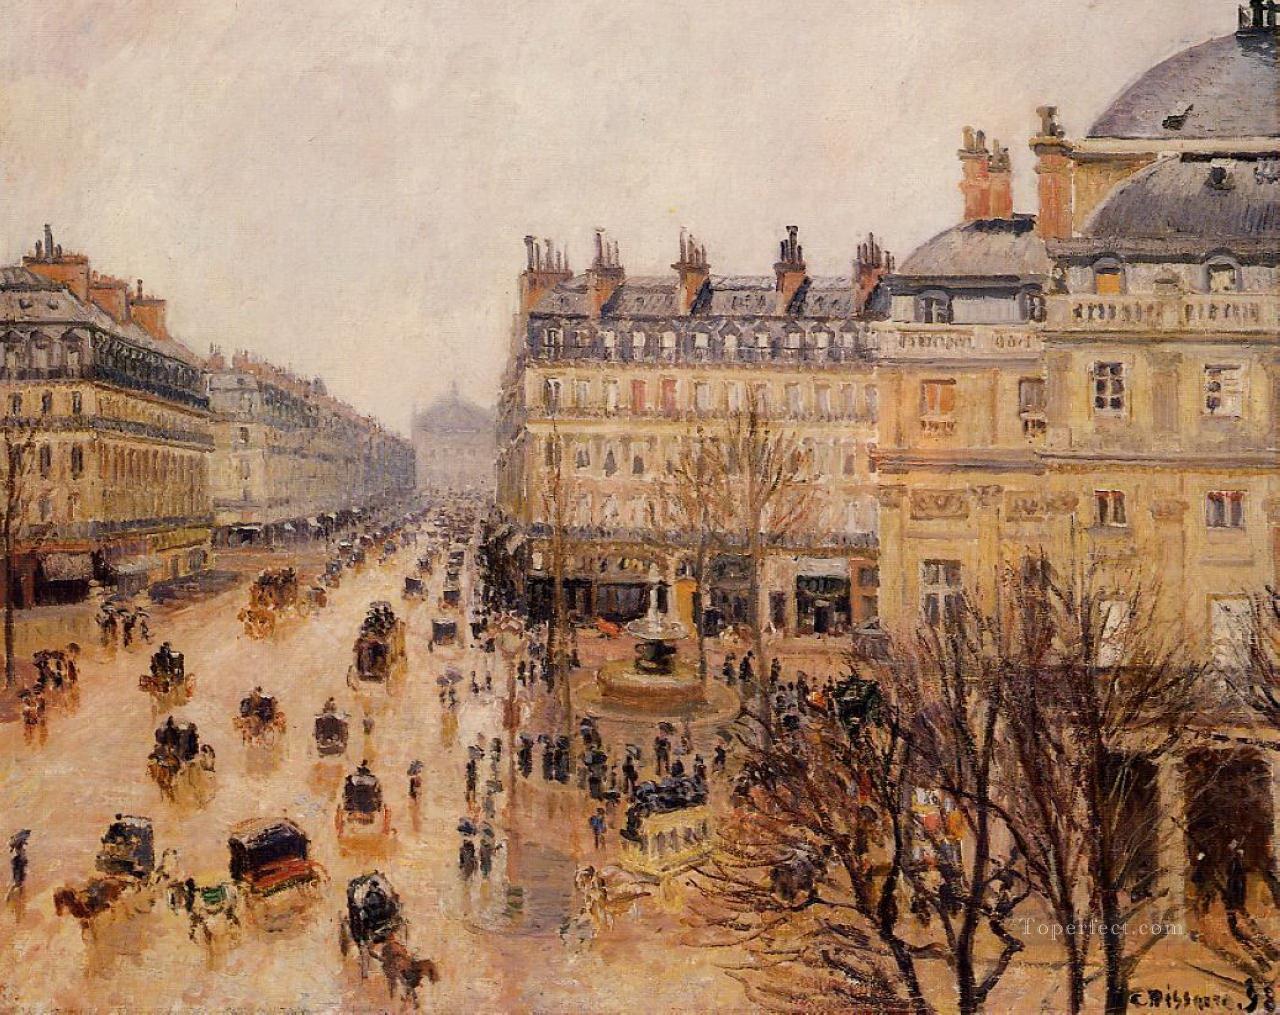 劇場フランセ広場の雨の効果 カミーユ ピサロ油絵